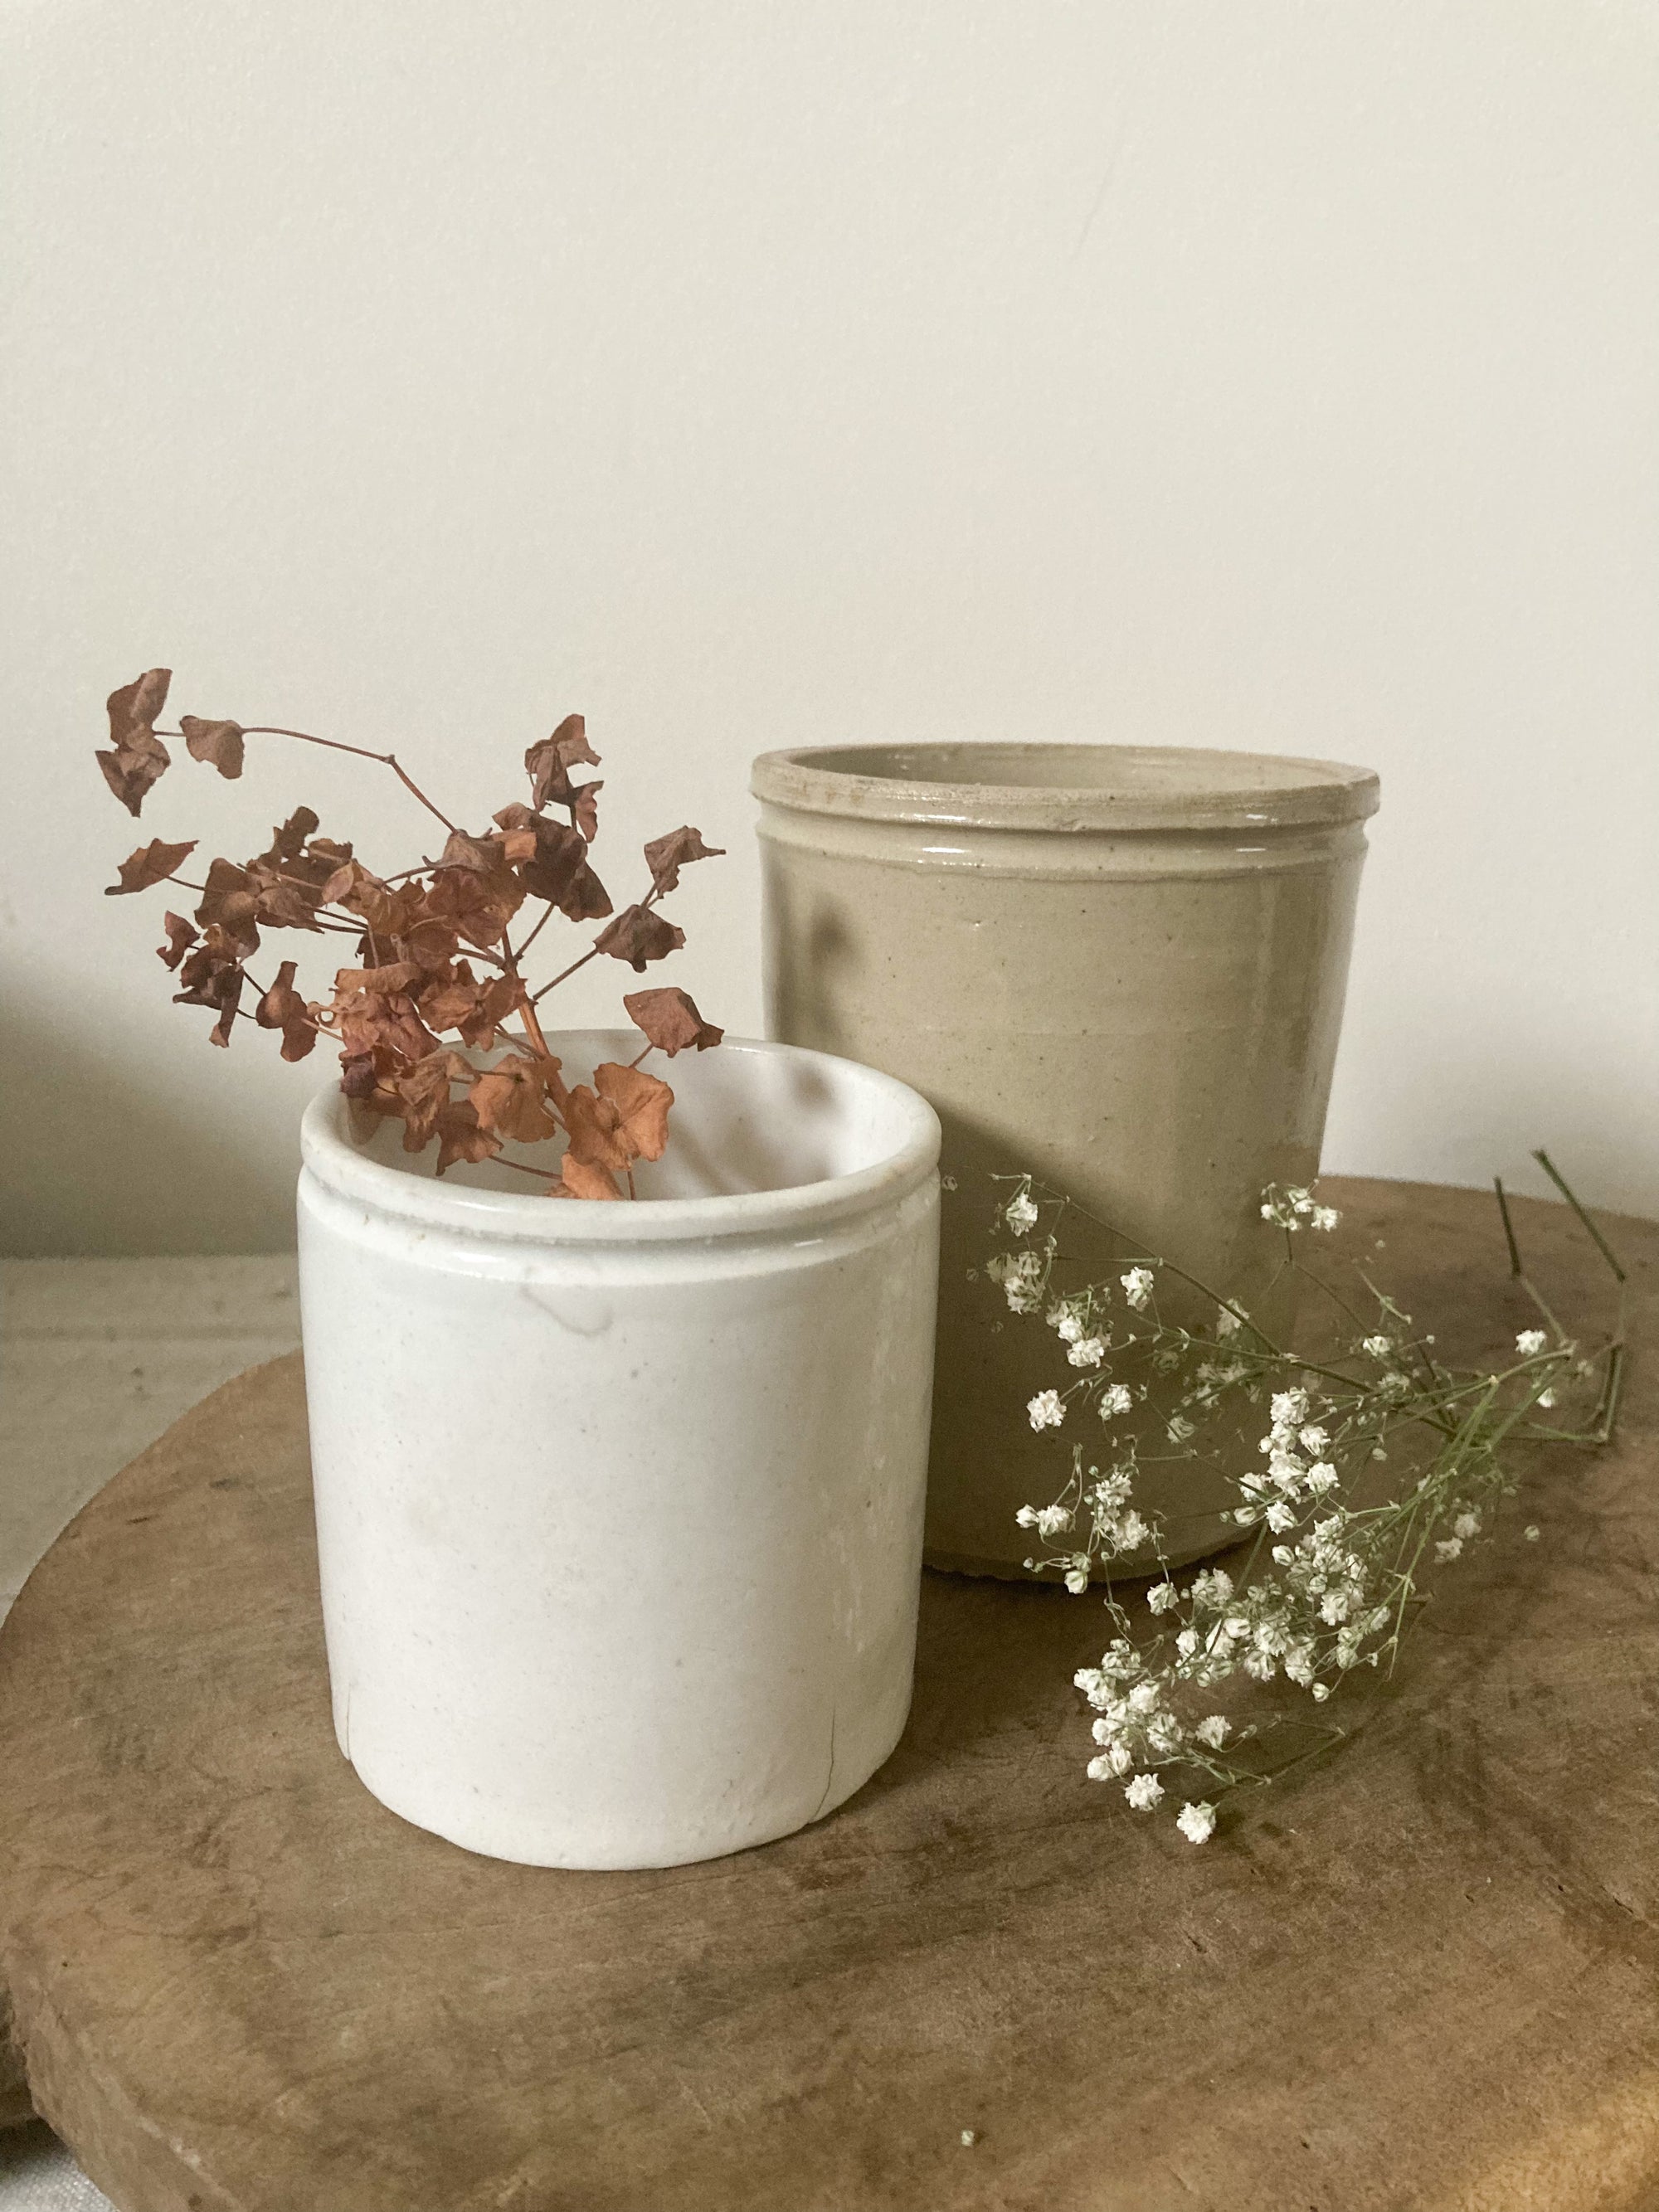 Vintage white stoneware marmalade pot